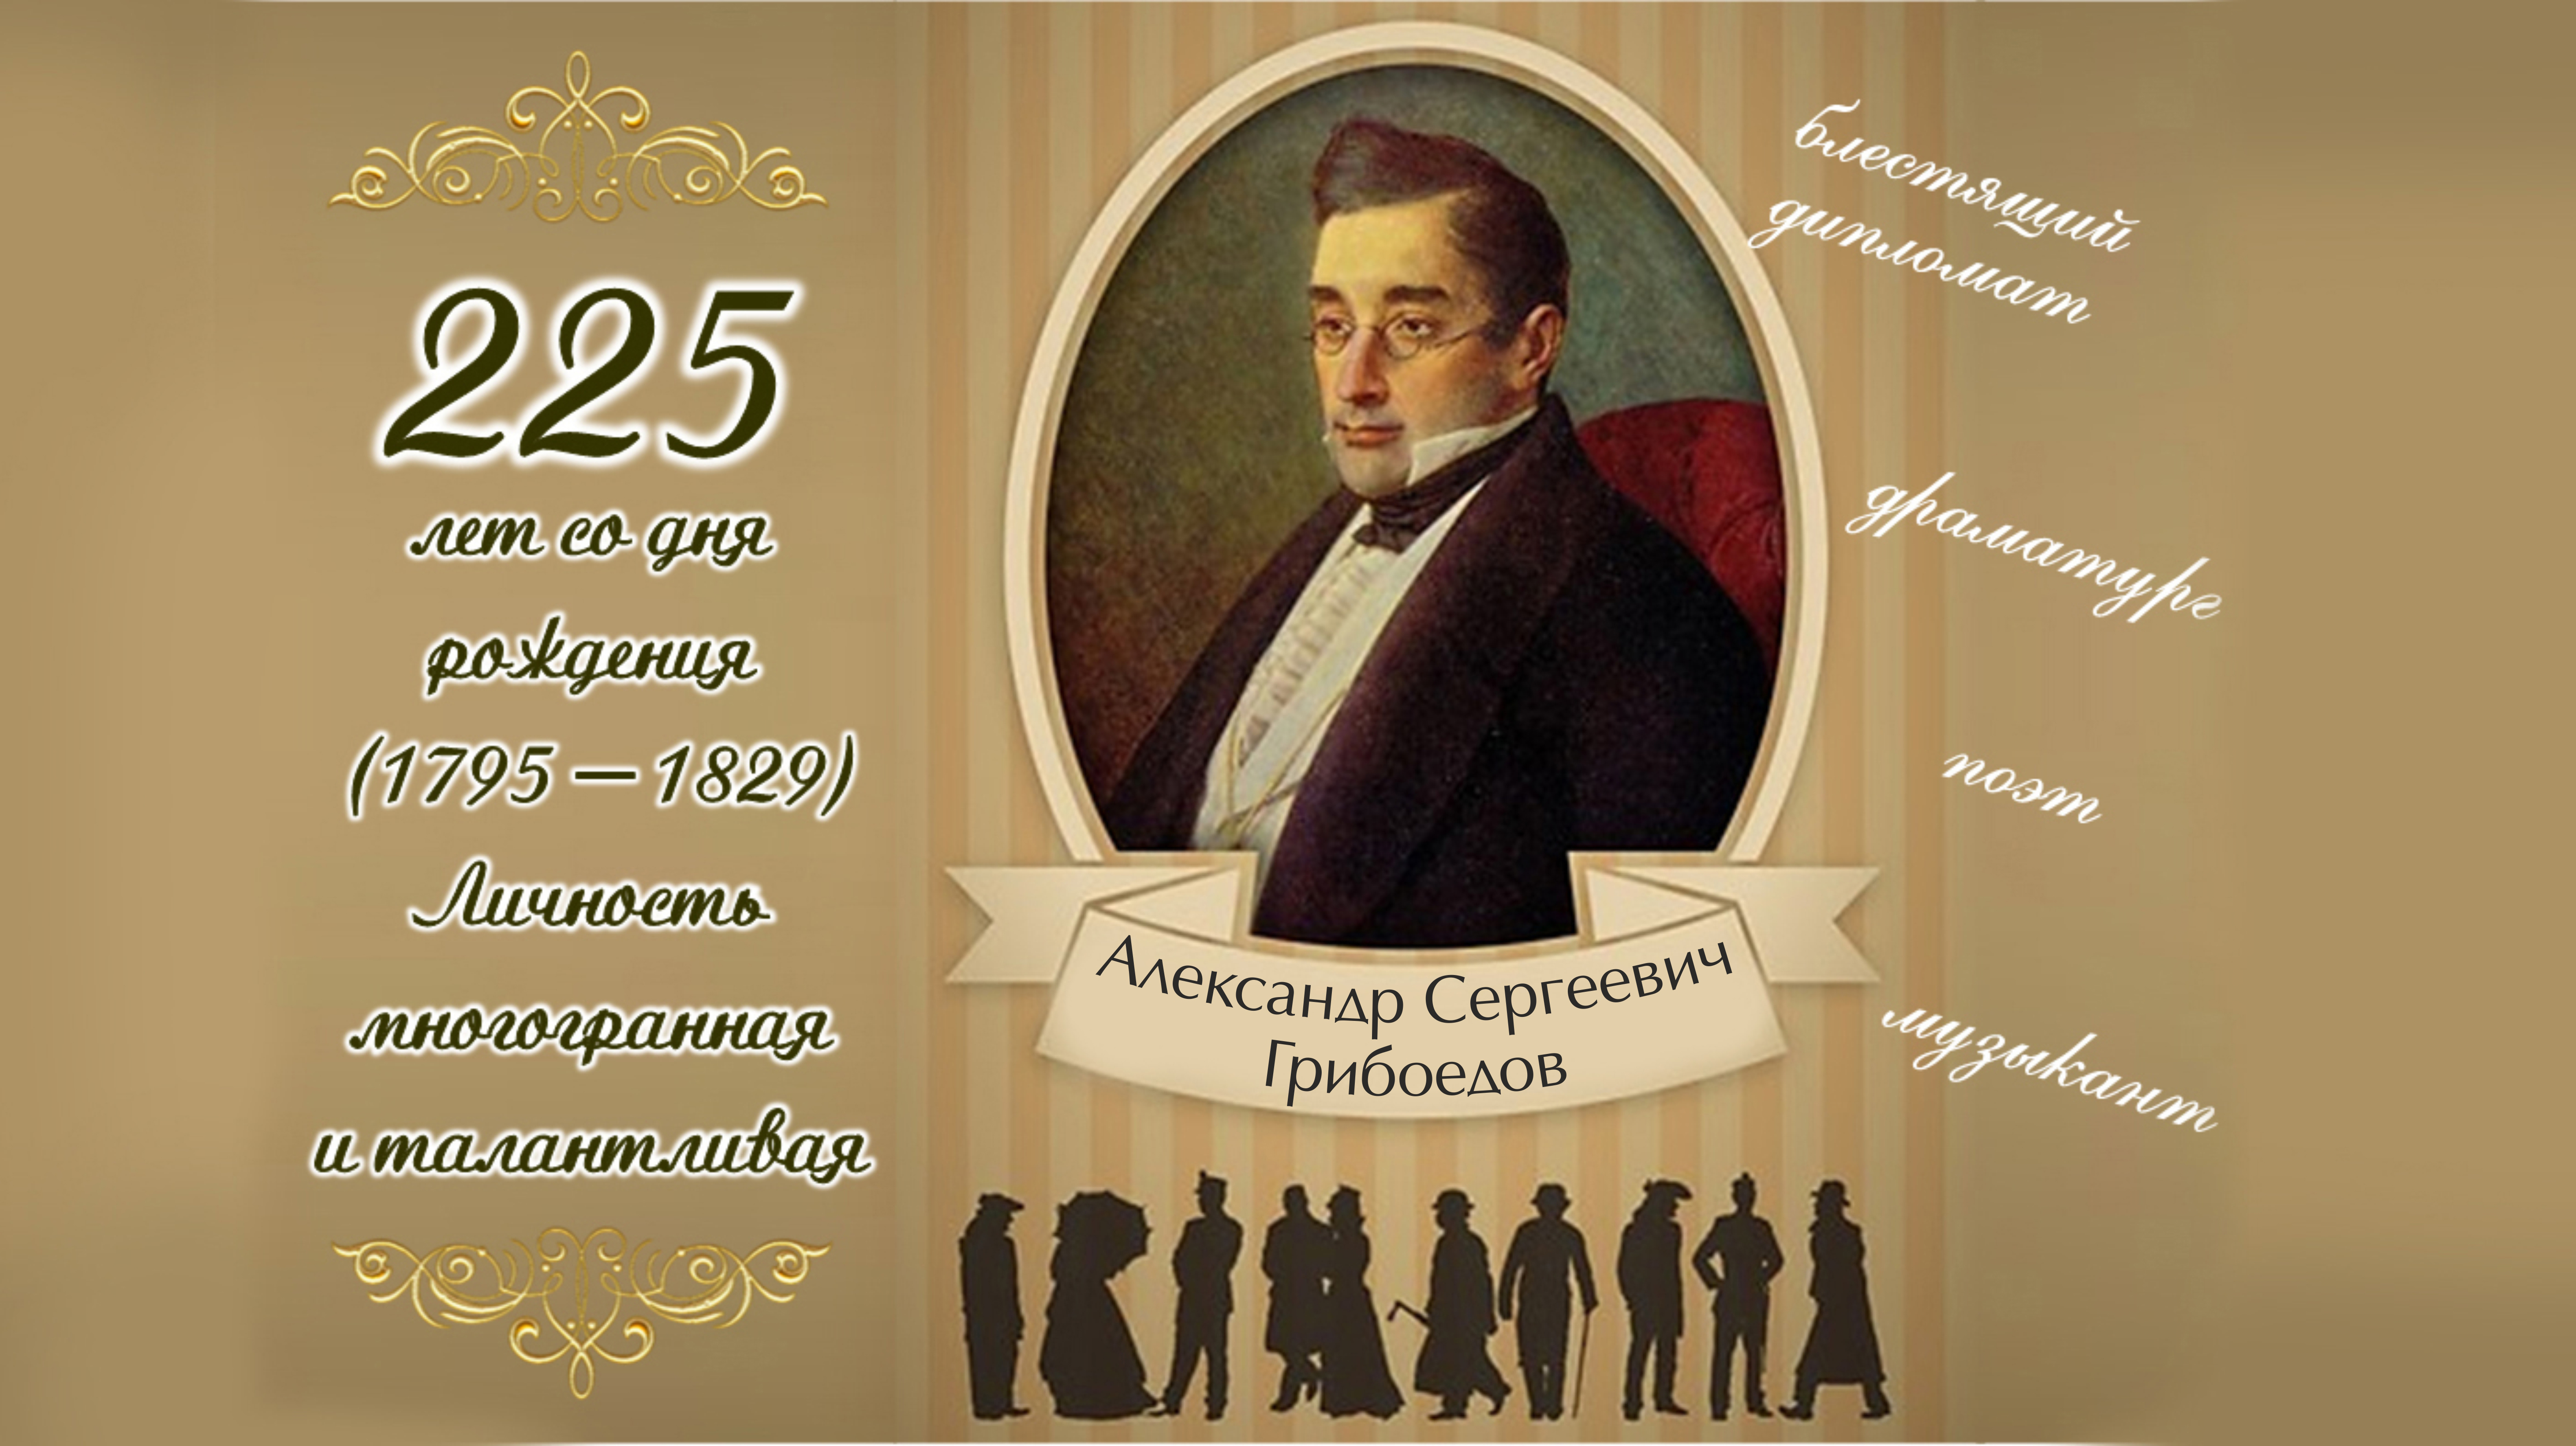 1795 Год. Родился Александр Сергеевич Грибоедов, русский писатель